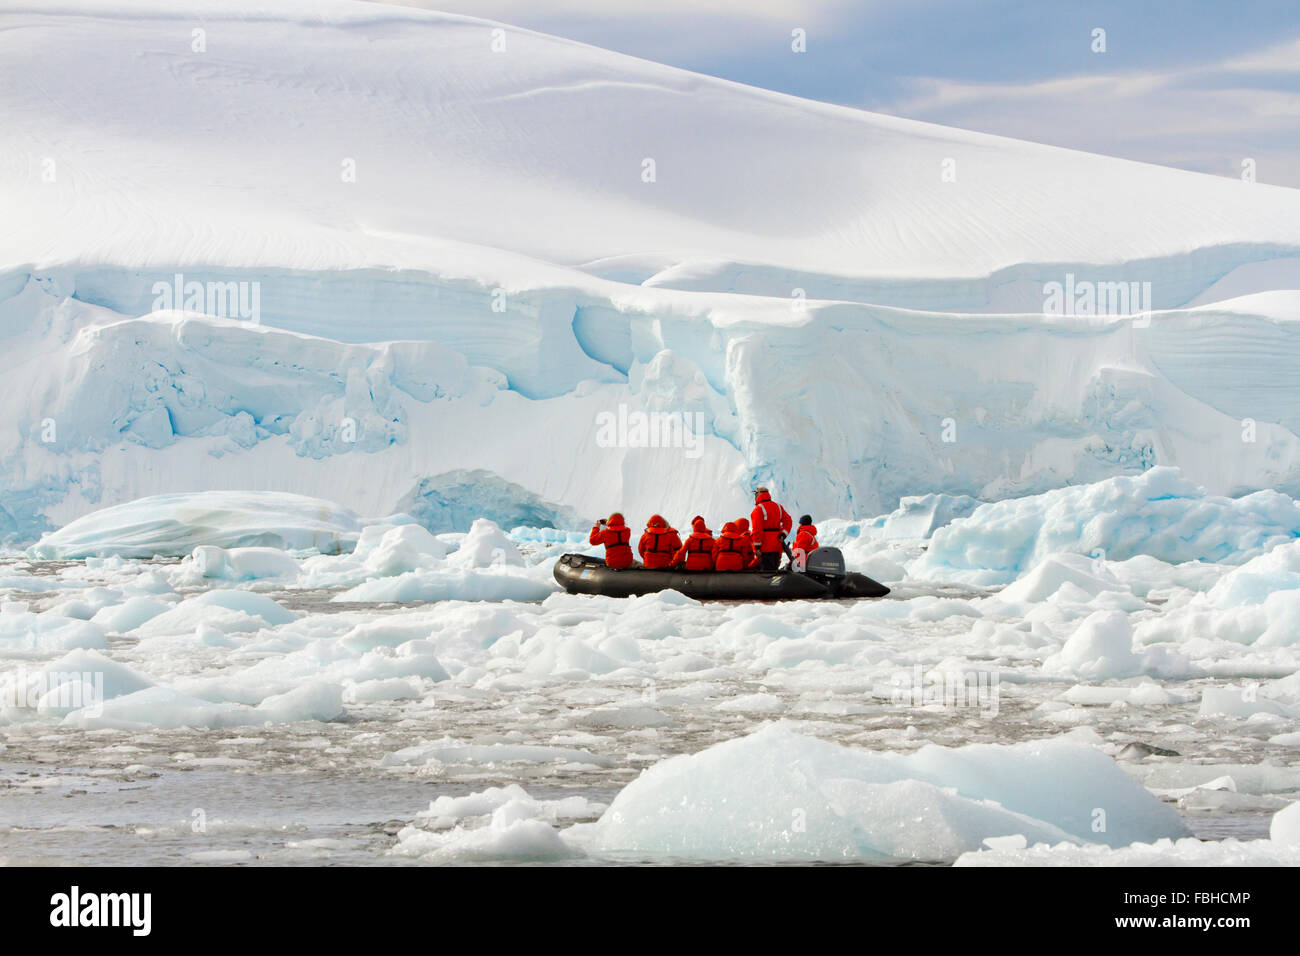 La péninsule antarctique - 12 décembre 2015 : Zodiac cruiser avec les passagers d'explorer le champ de glace en Antarctique Péninsule. Banque D'Images